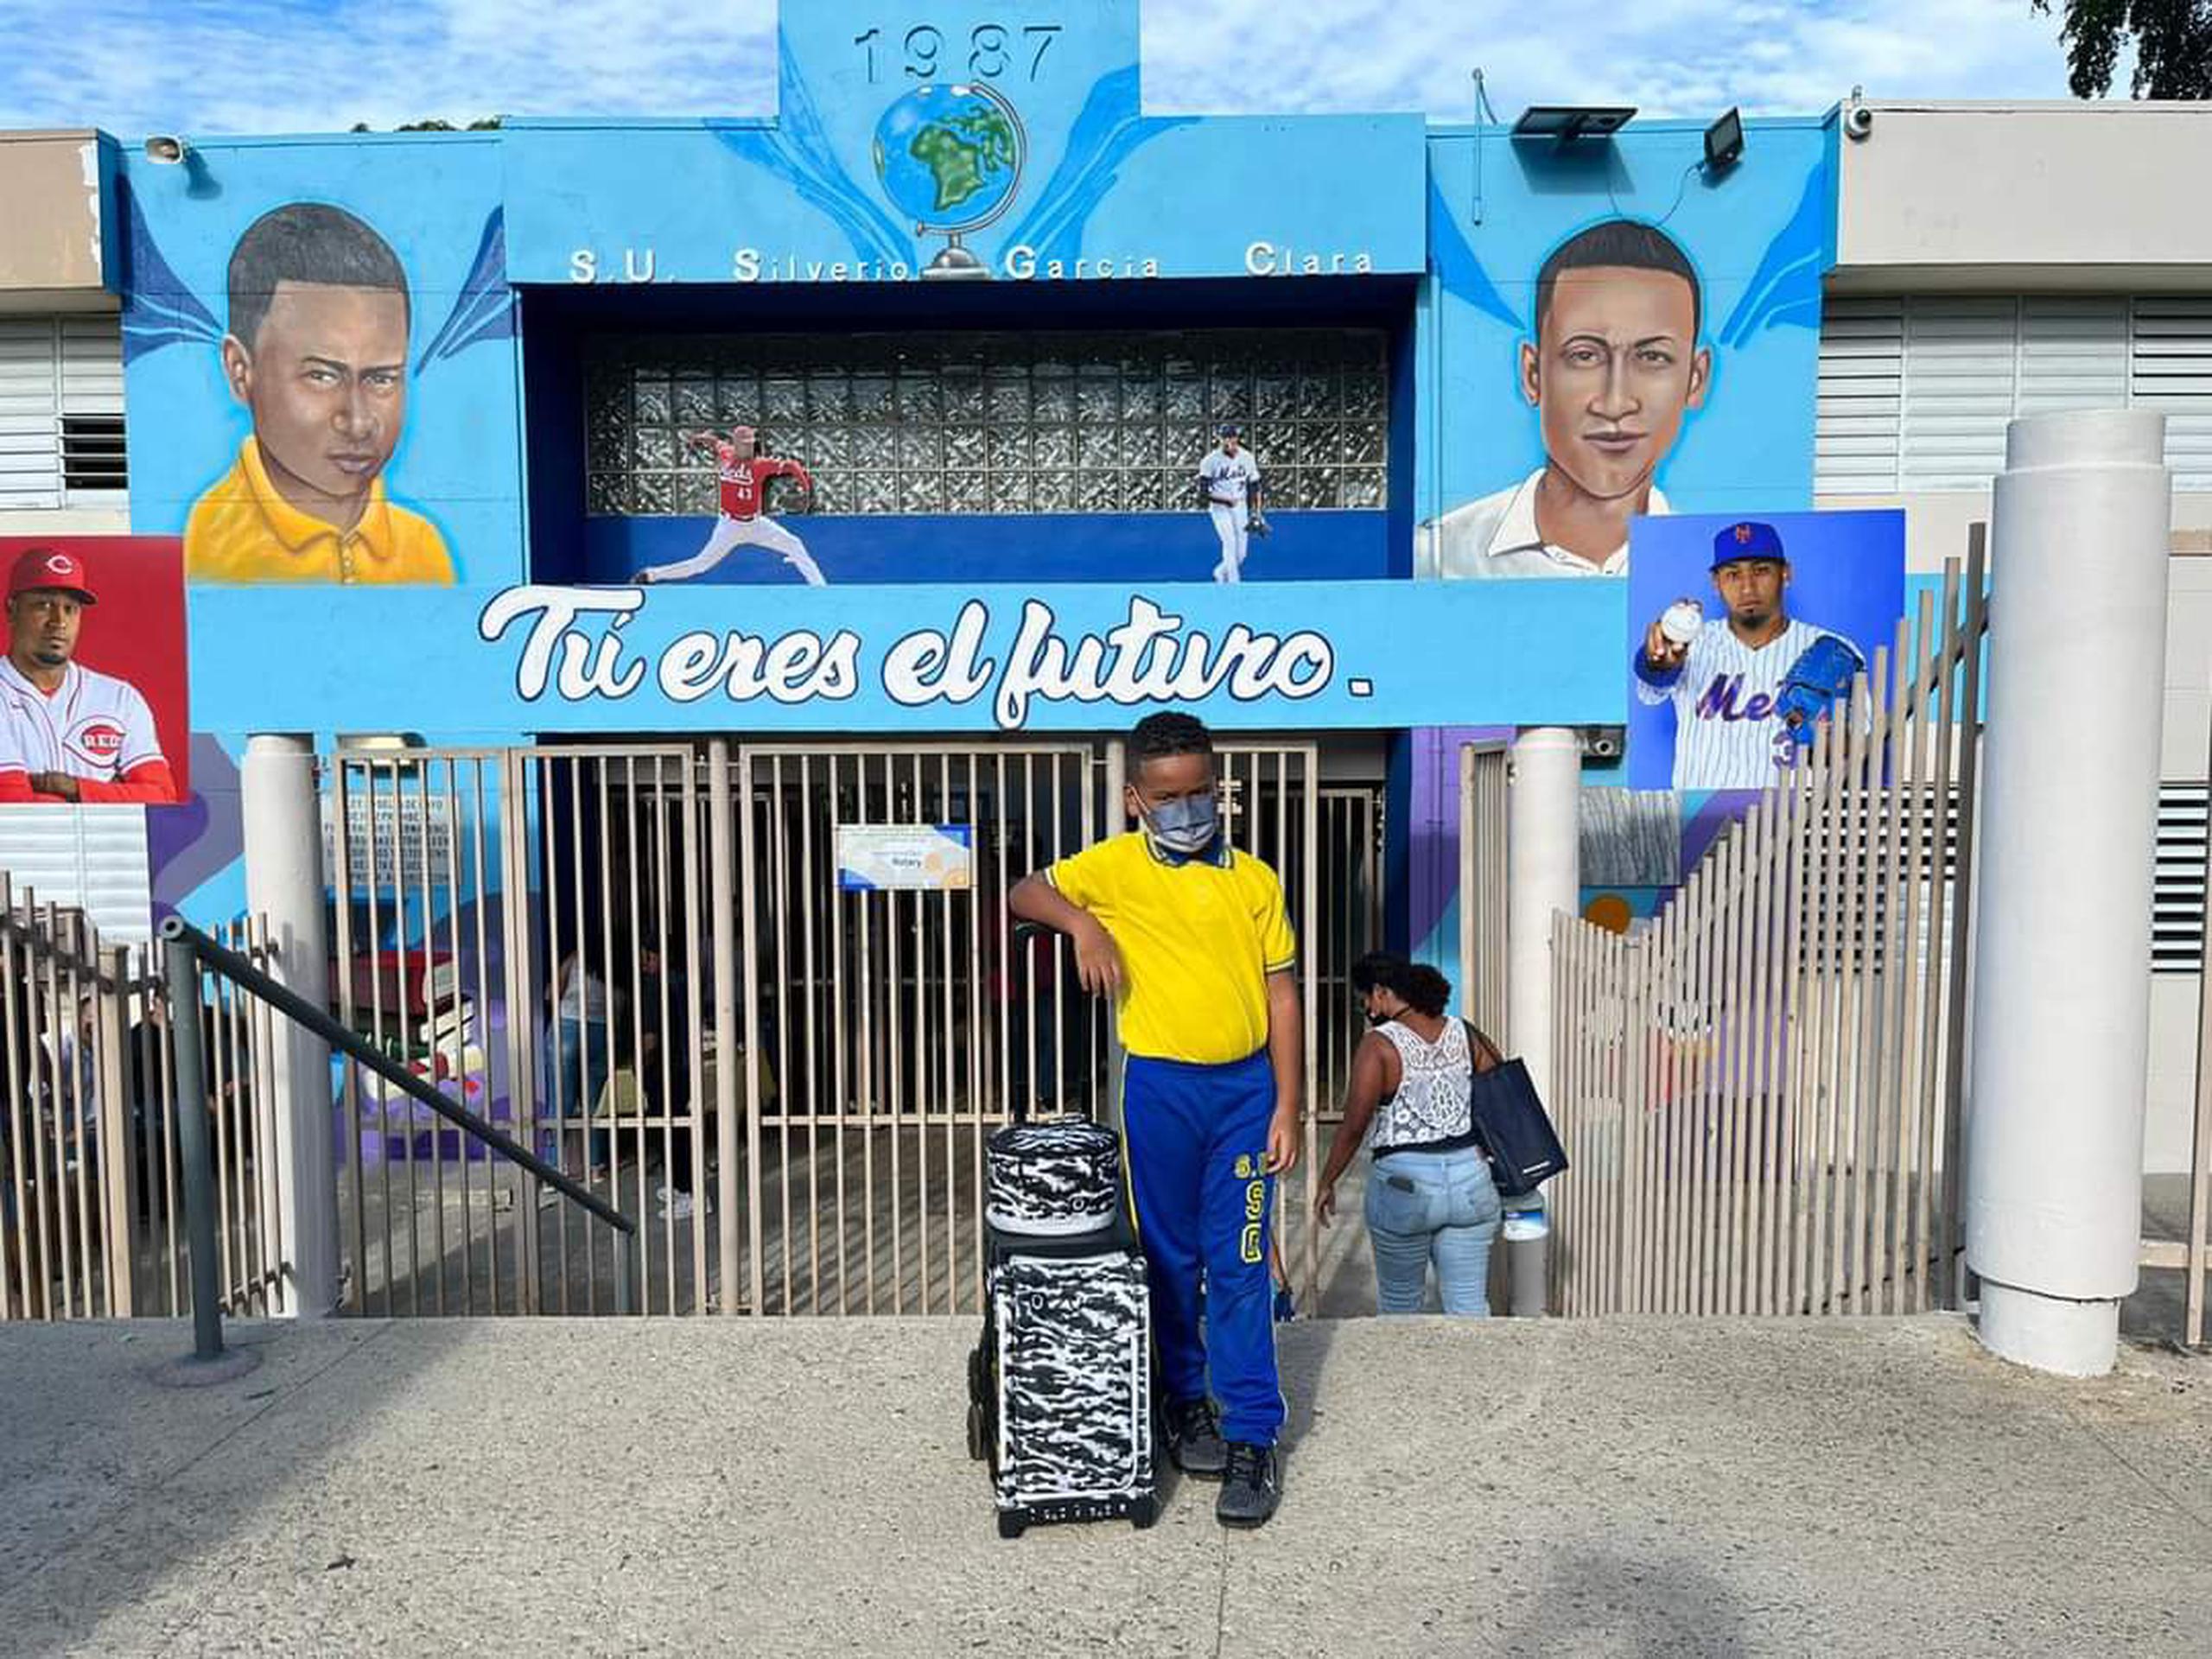 Un niño posa en la entrada de la escuela Segunda Unidad Silverio García Clara de Naguabo, donde la comunidad remozó el plantel.